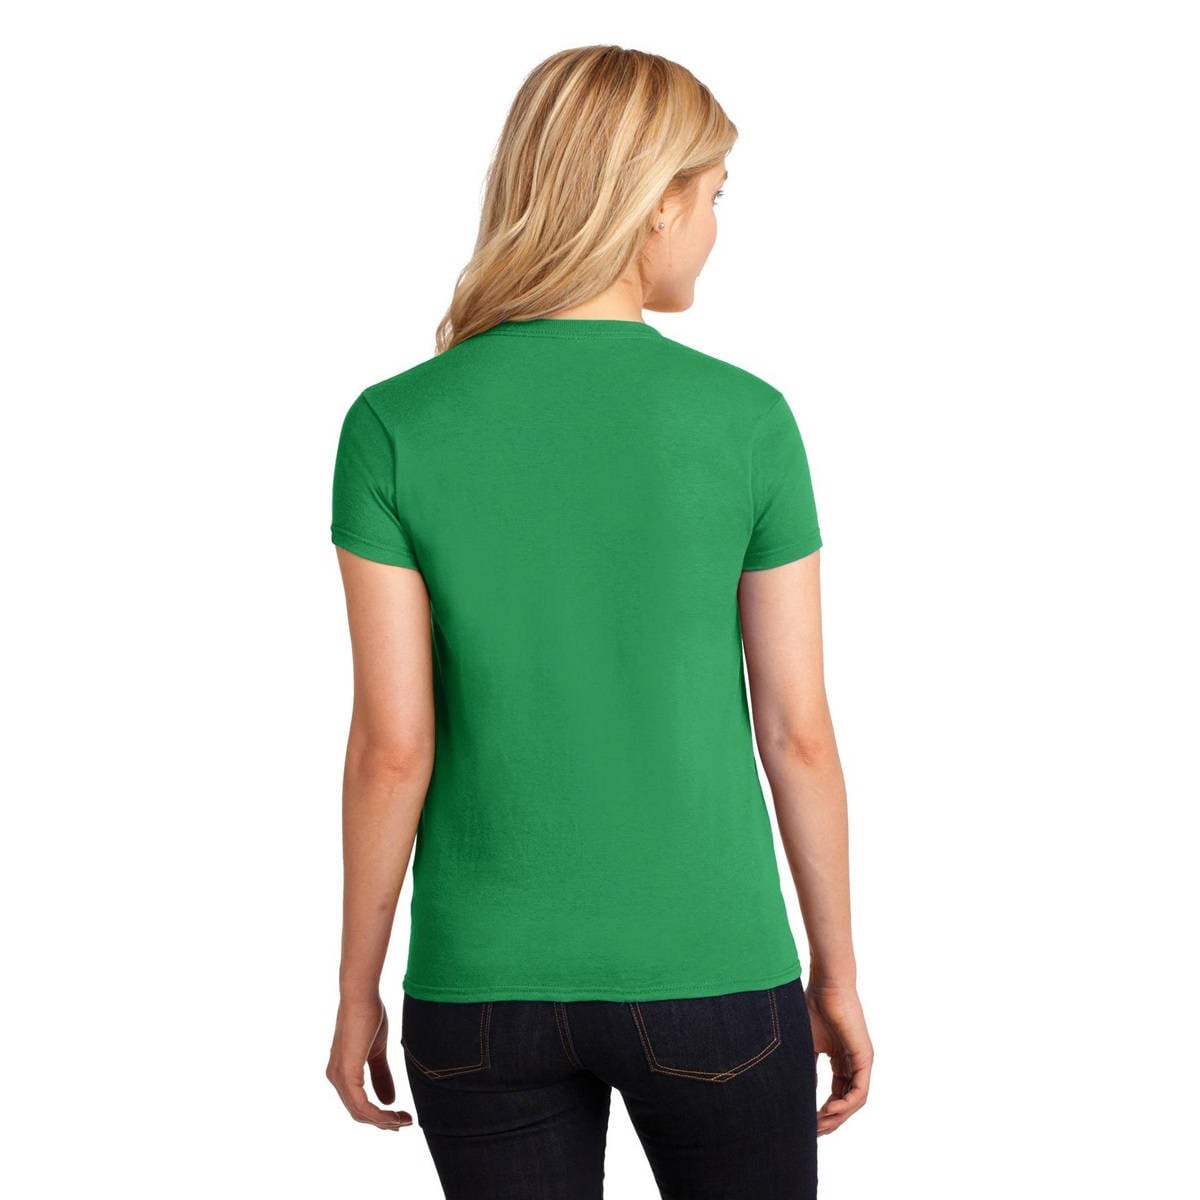 Women's St. Patricks Day Shirt, Here To Paddy, Lucky Irish Shirt, Shamrock, Green Shirt, Irish Tee, Funny